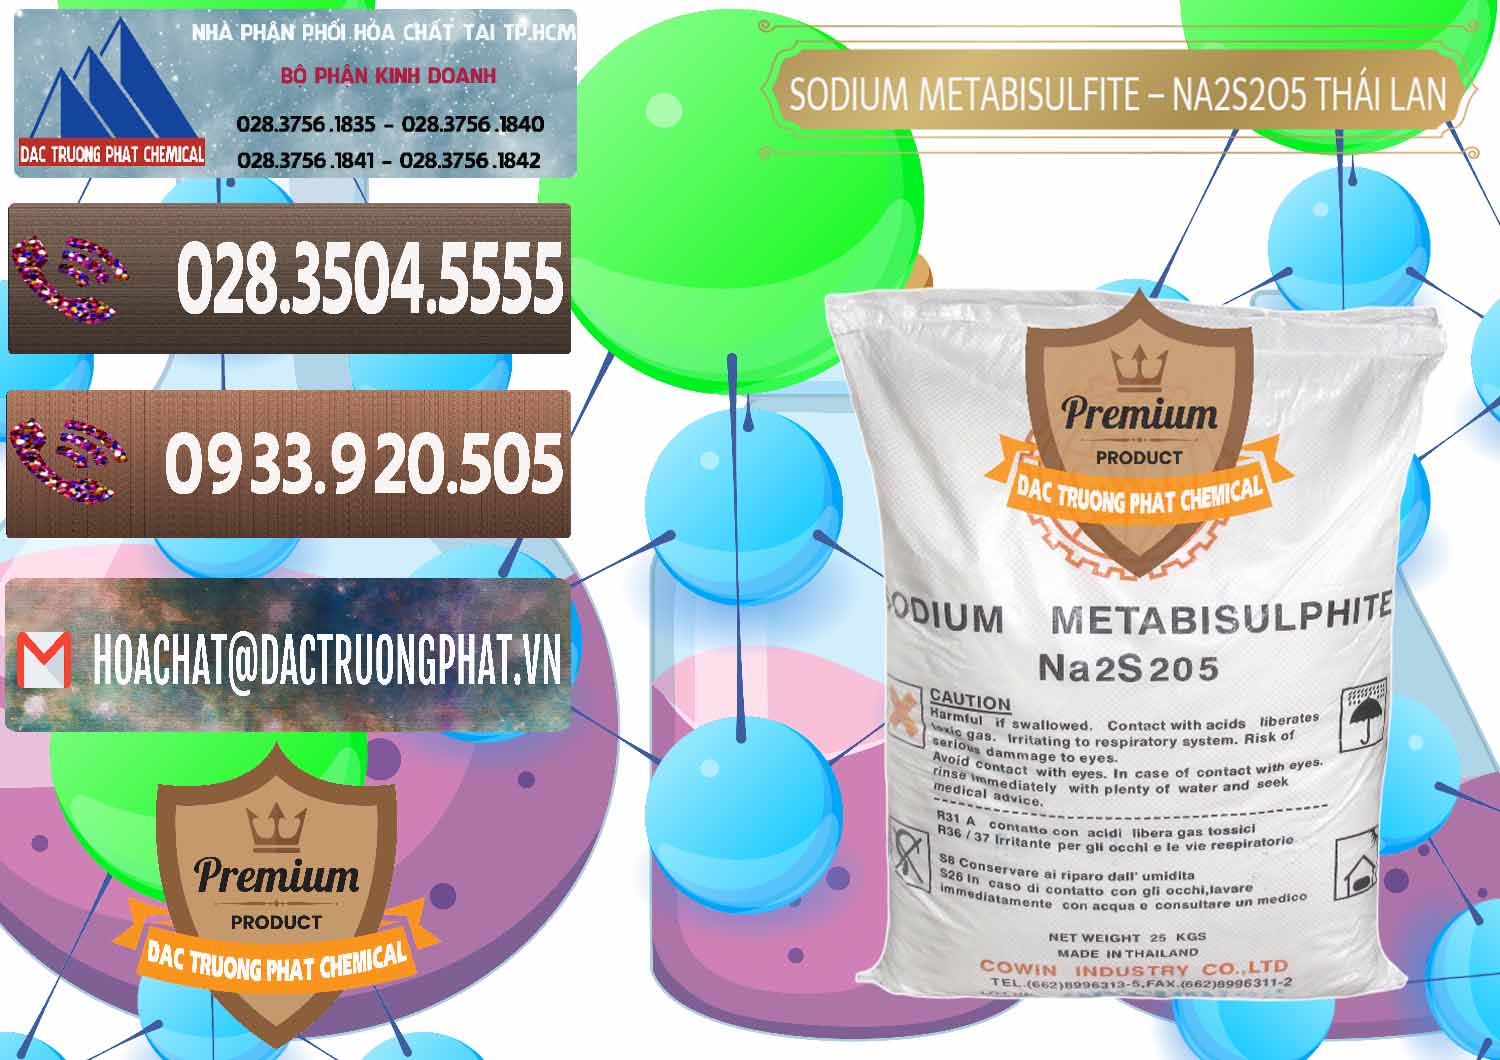 Nơi chuyên kinh doanh - bán Sodium Metabisulfite - NA2S2O5 Thái Lan Cowin - 0145 - Đơn vị chuyên kinh doanh & phân phối hóa chất tại TP.HCM - hoachatviet.net